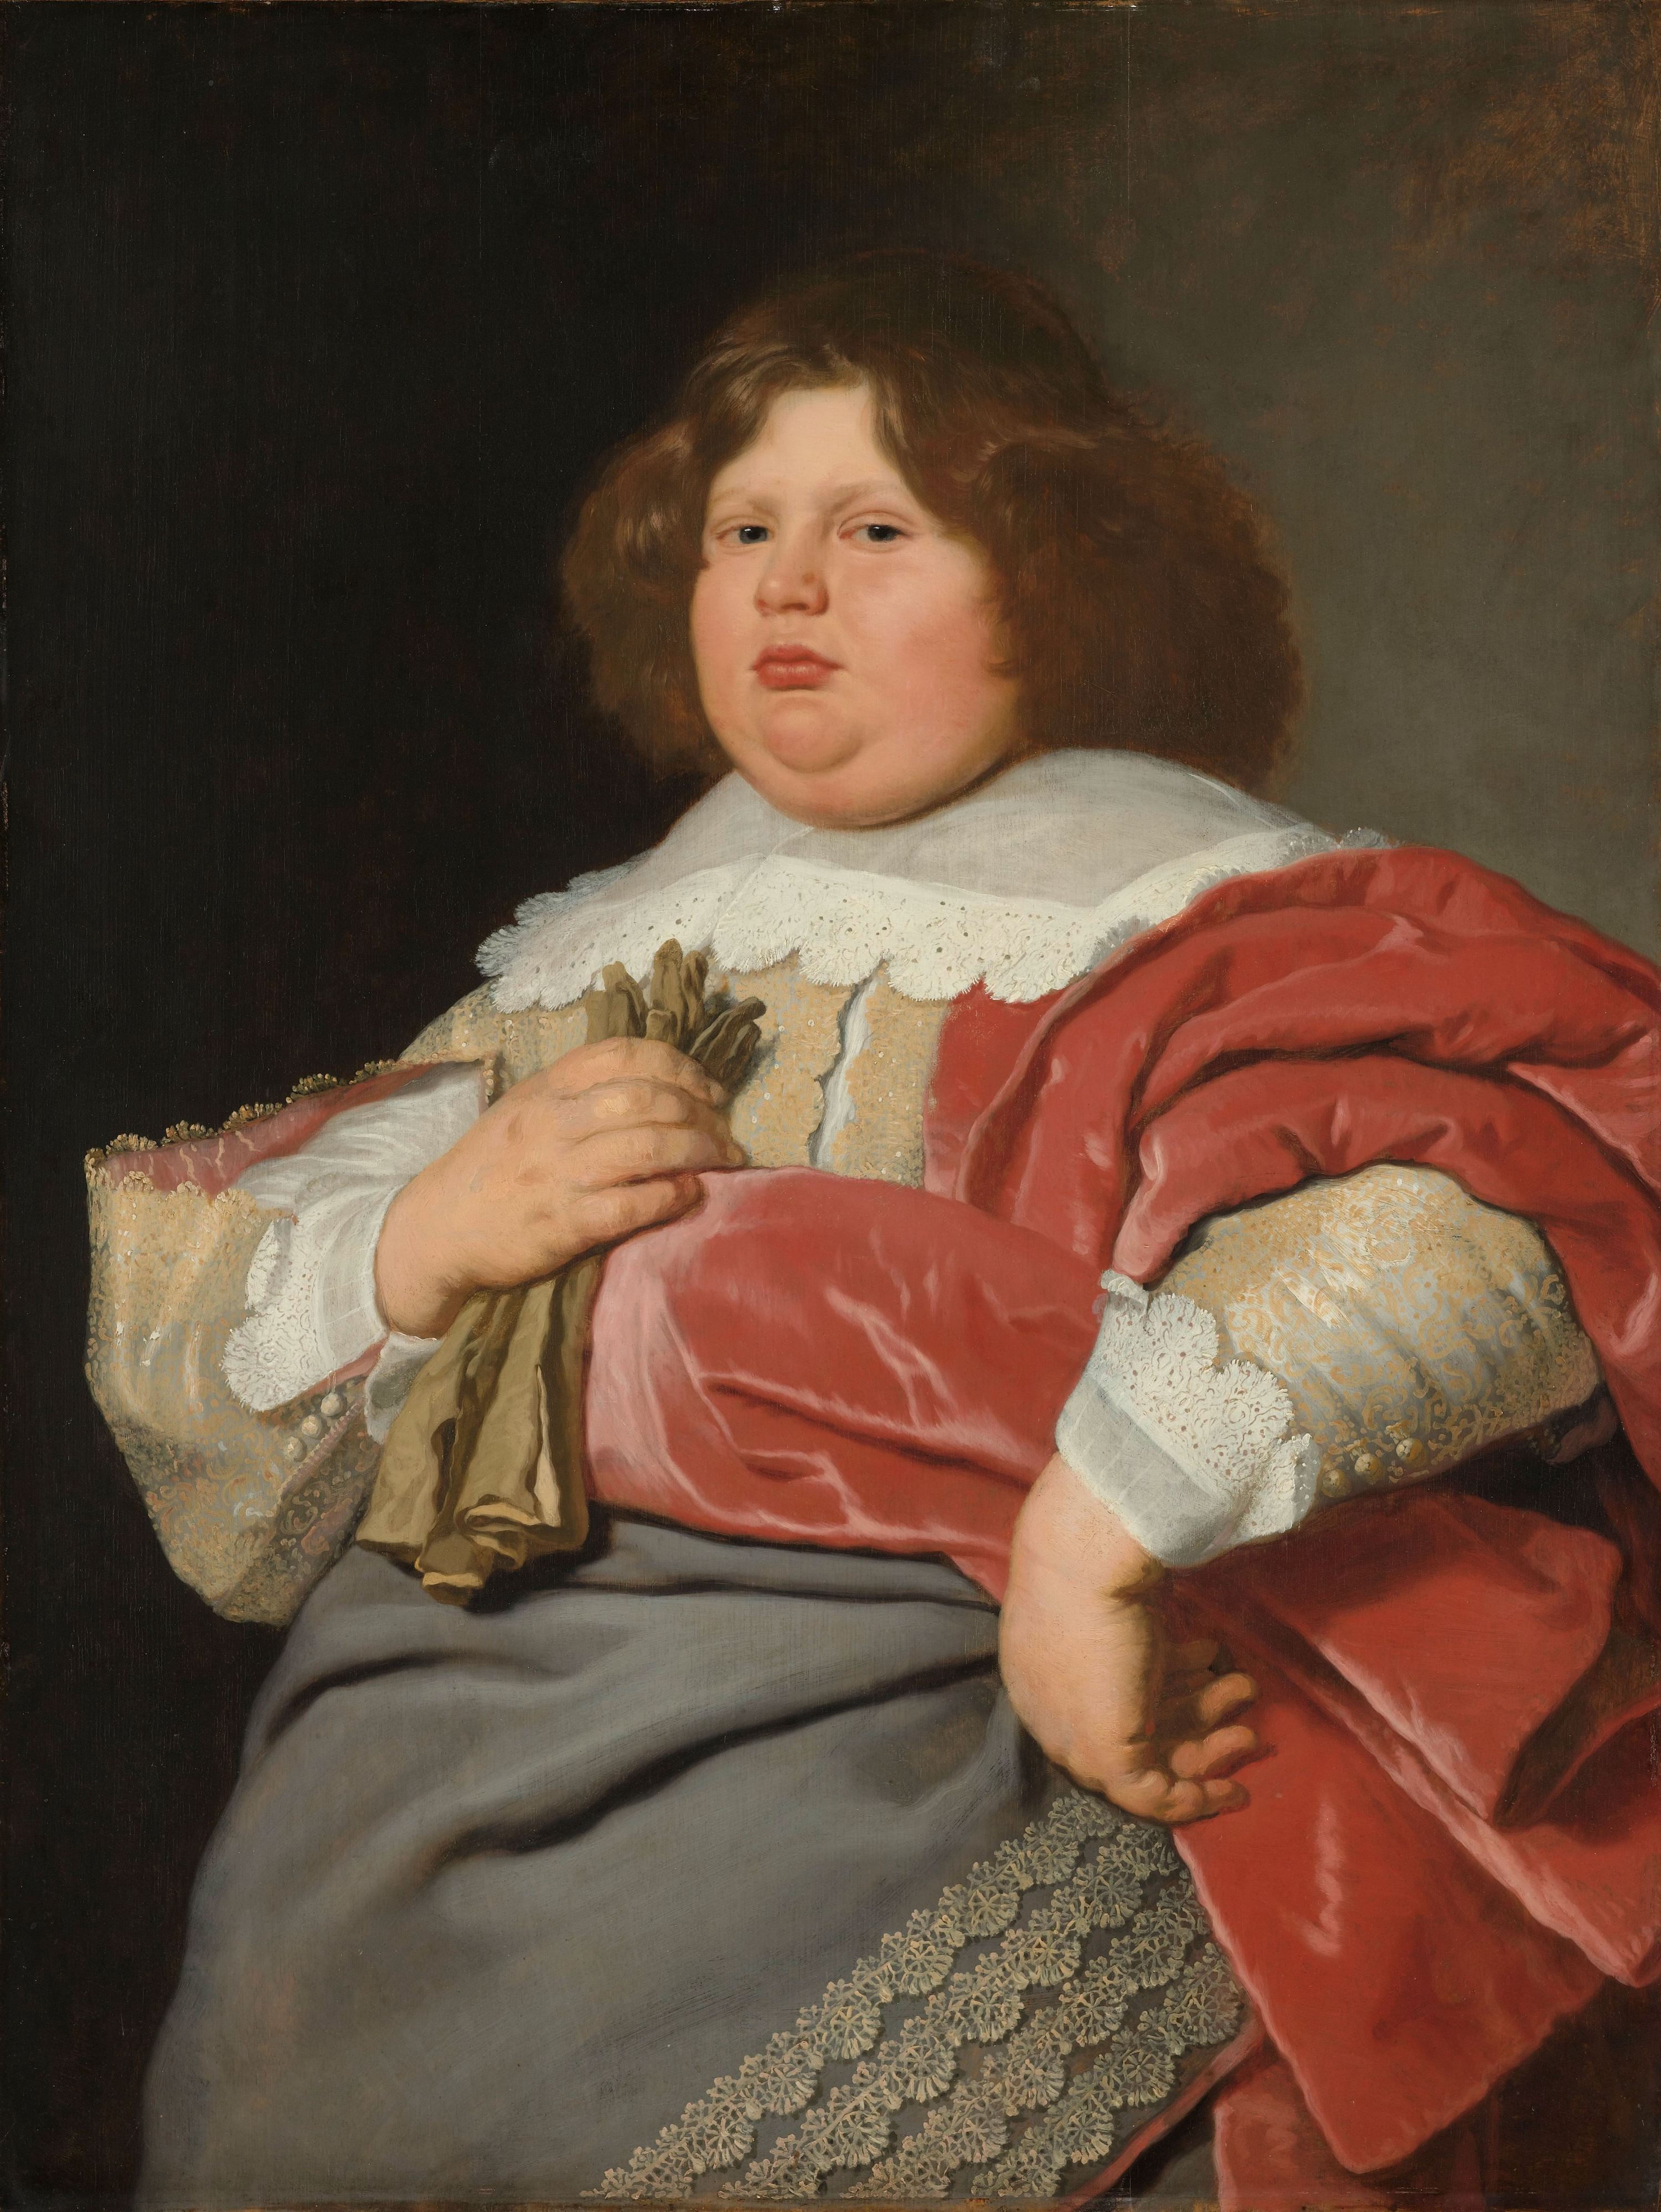 Retrato de Gerard Andriesz Bicker by Bartholomeus van der Helst - c. 1642 - 94 x 117,5 cm Rijksmuseum